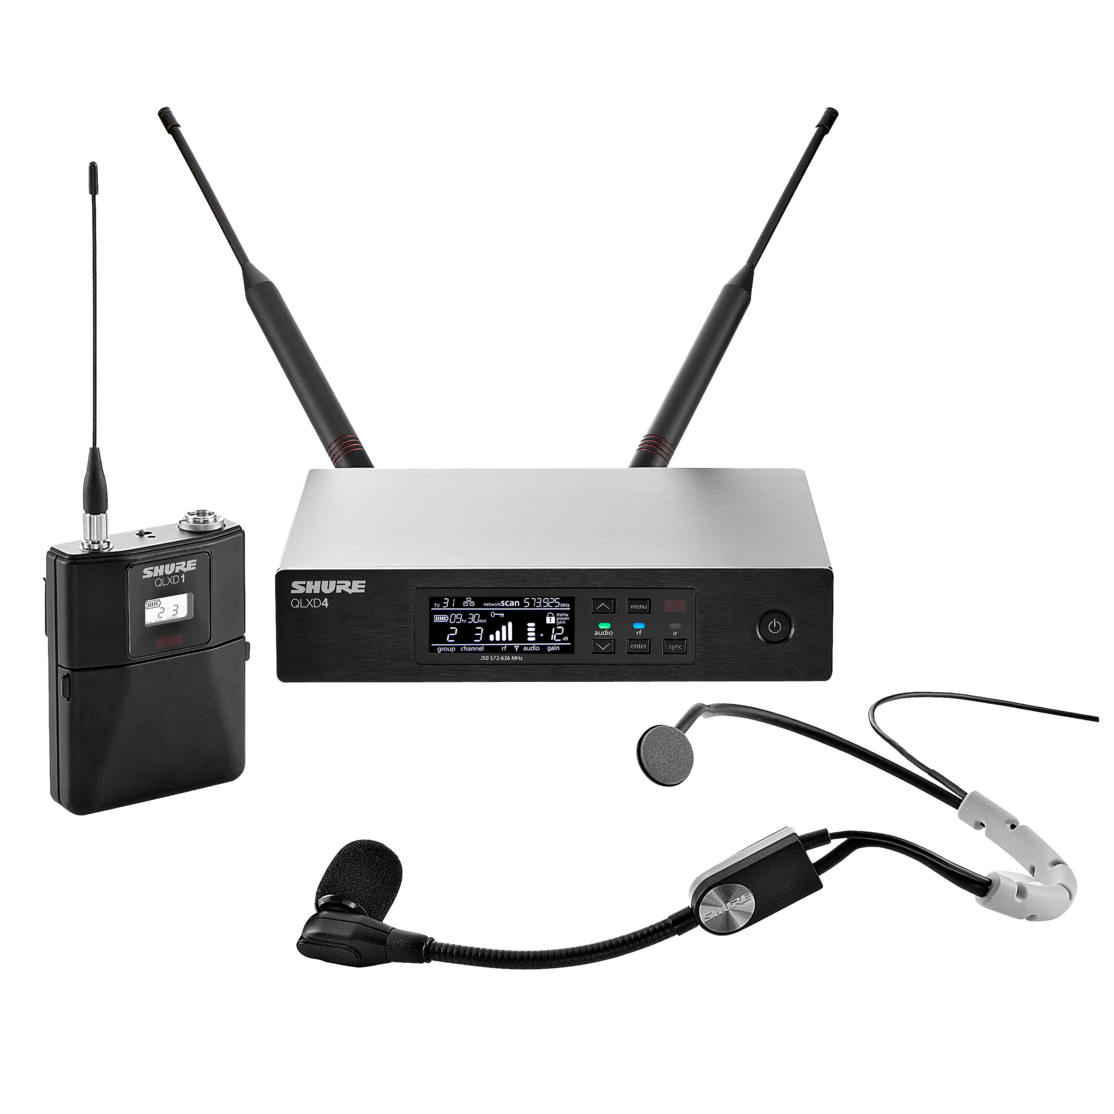 SHURE QLXD14E/SM35 G51 цифровая радиосистема с головным микрофоном SM35, конденсаторным кардиоидным, 470-534 МГц. Черный